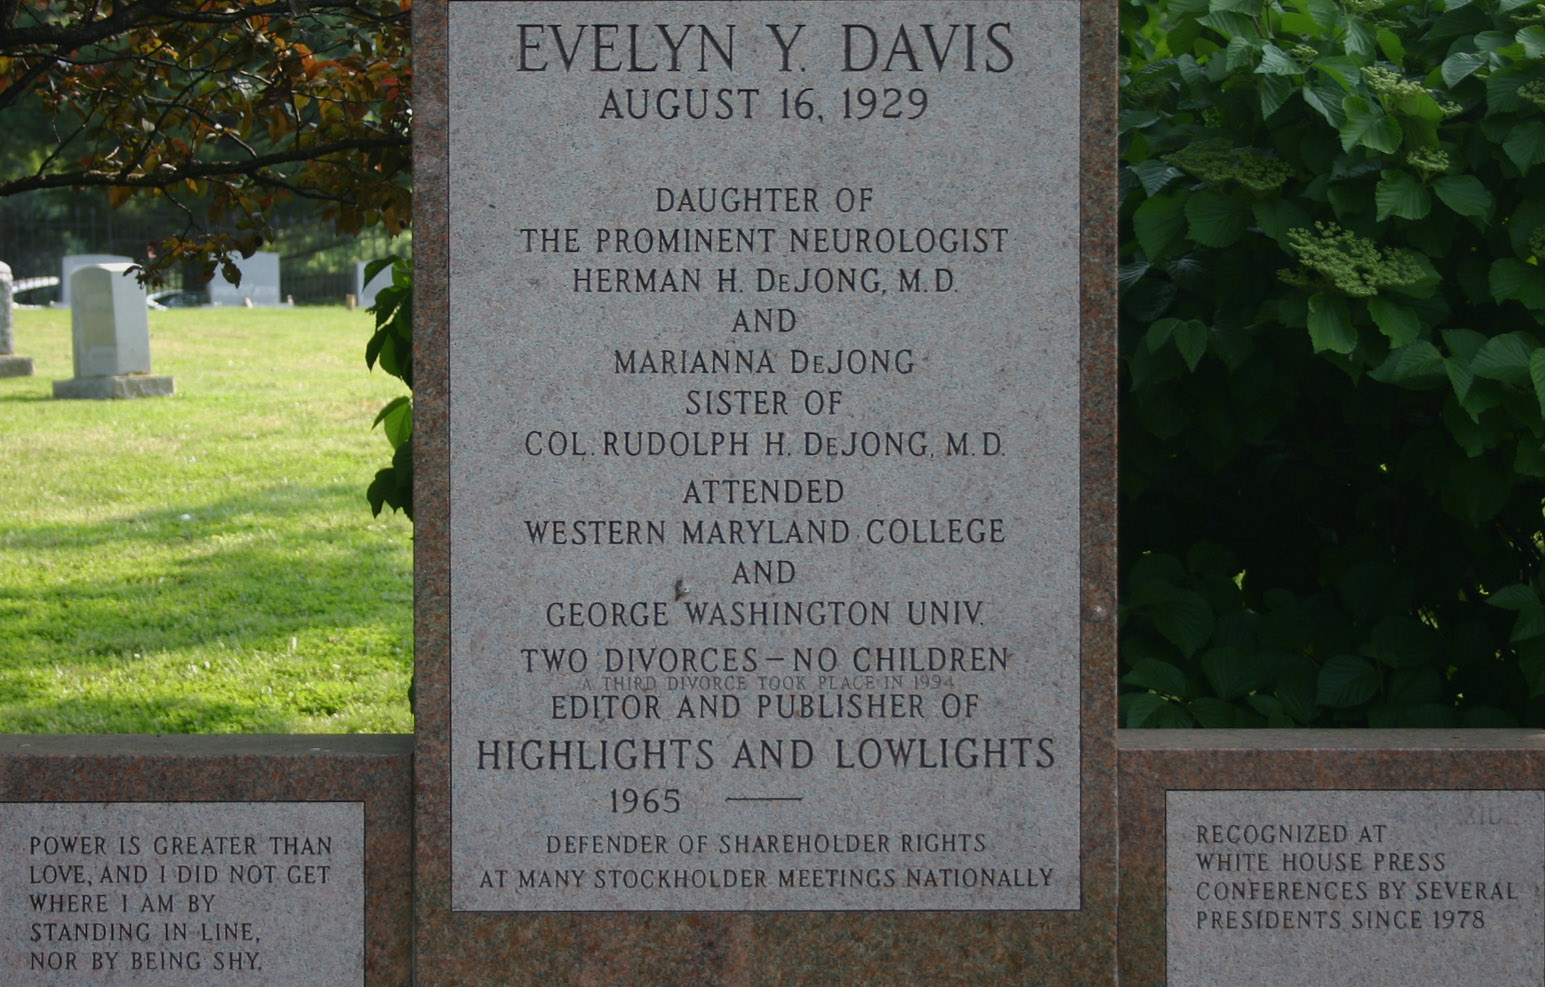 Evelyn Y. Davis